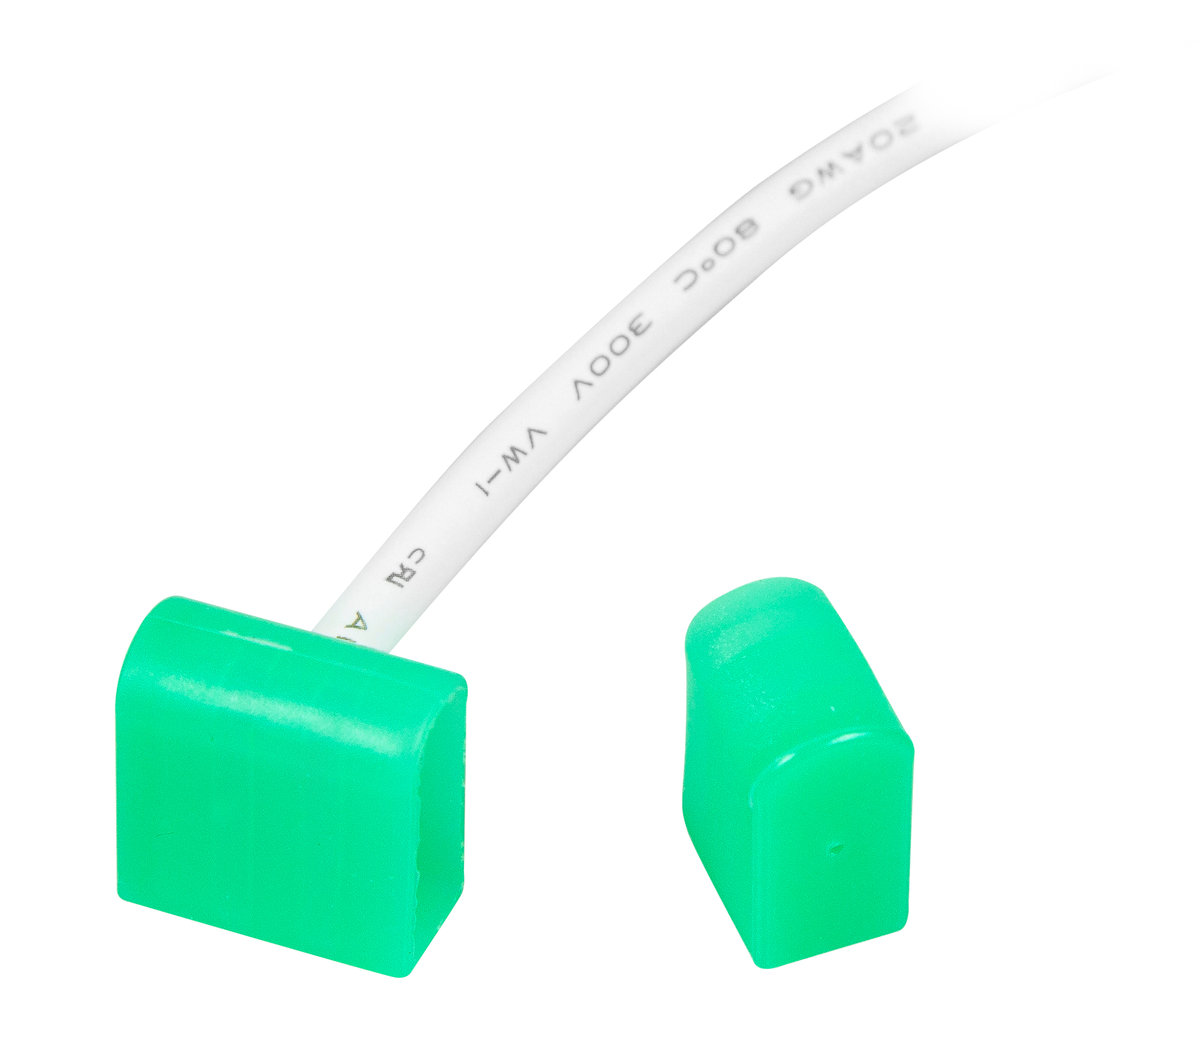 Przyłącze zasilające do BERGMEN Neon Flex HXR One / zielone / końcówka zasilająca z wyjściem bocznym + przewód 30 cm + zaślepka